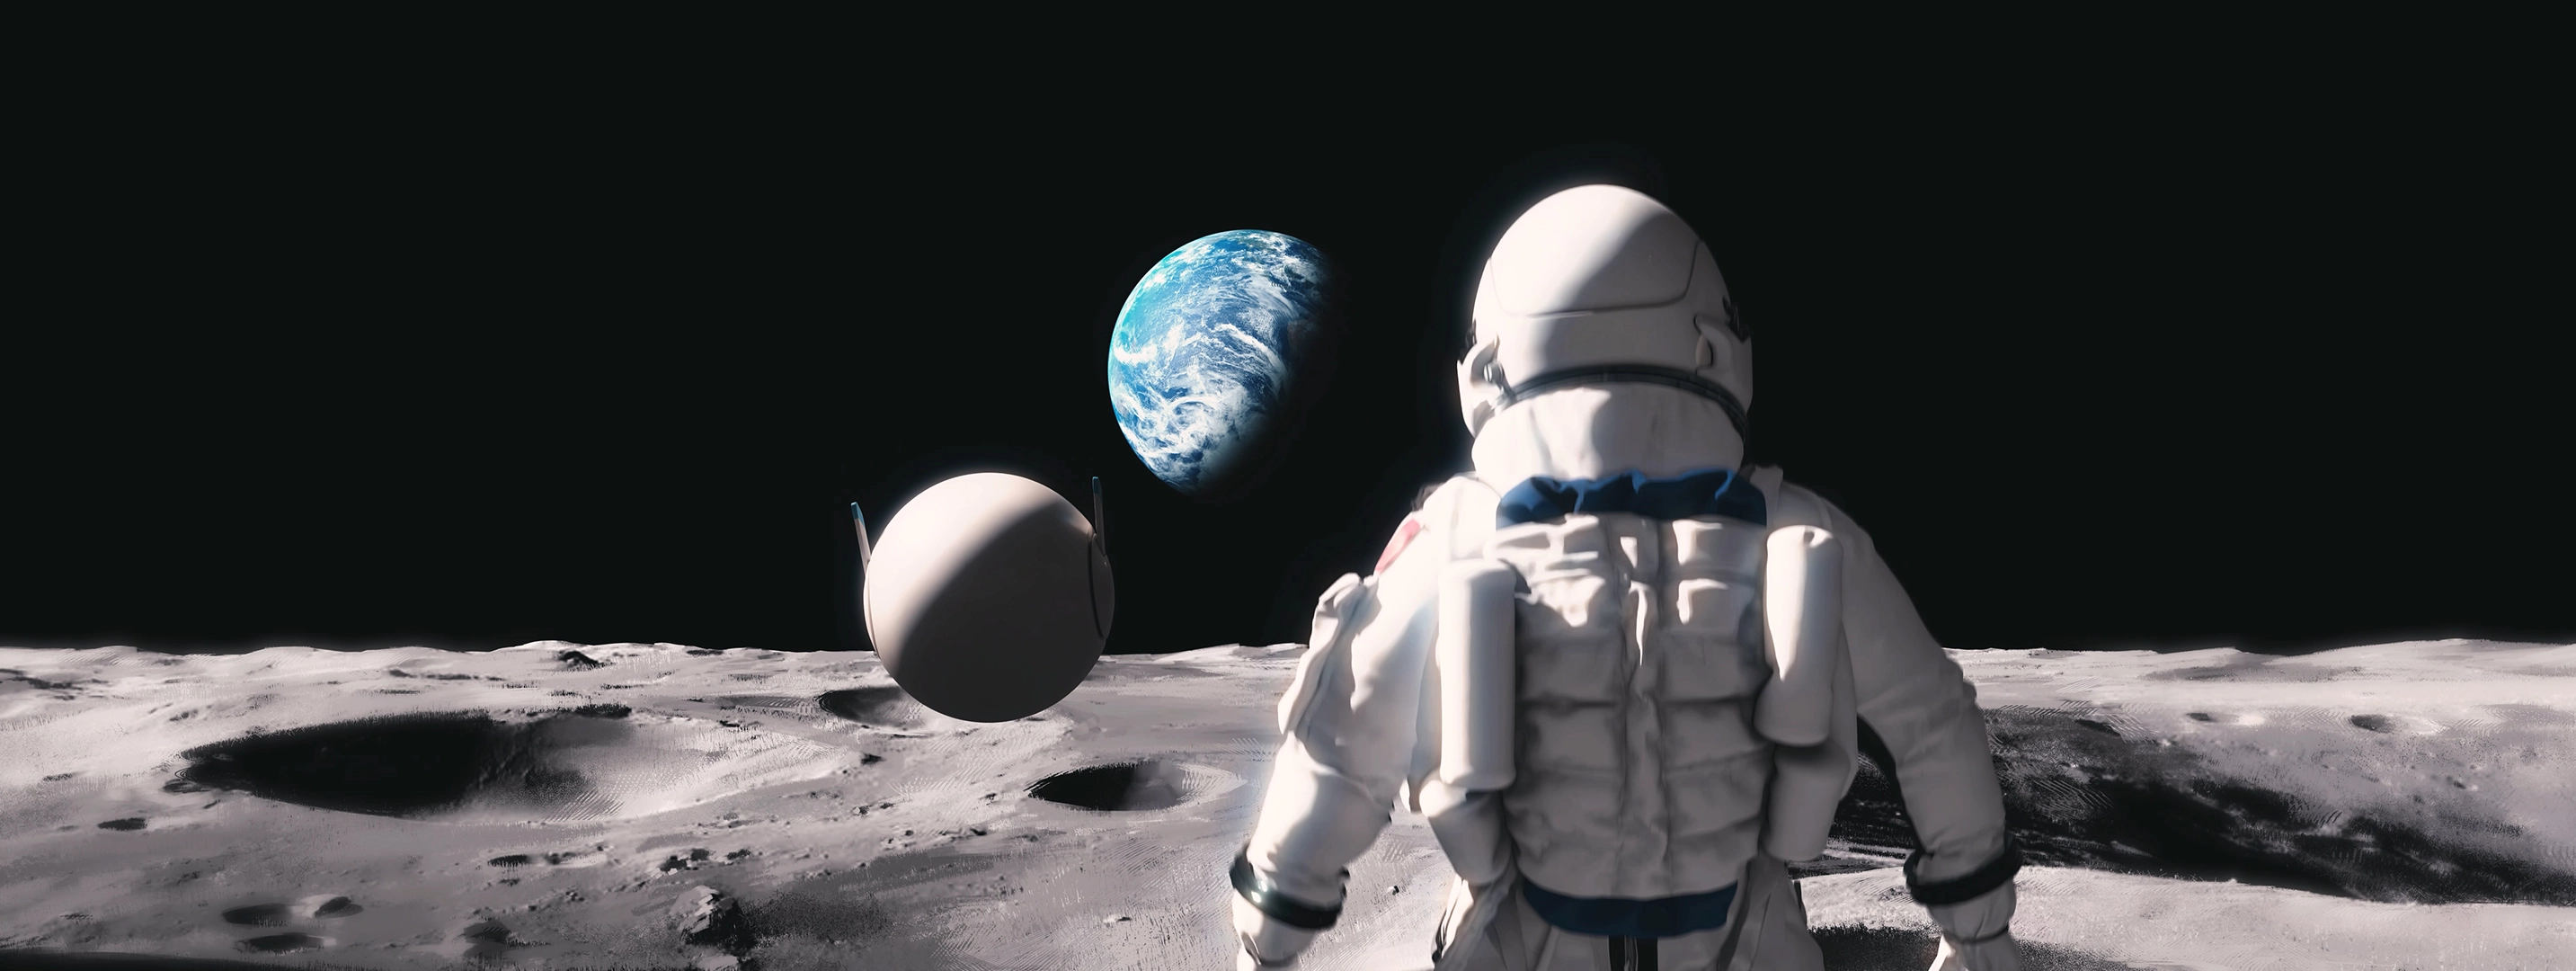 Extrait du film présentant le personnage principal et son compagnon le robot foulant le sol lunaire avec la terre en fond.